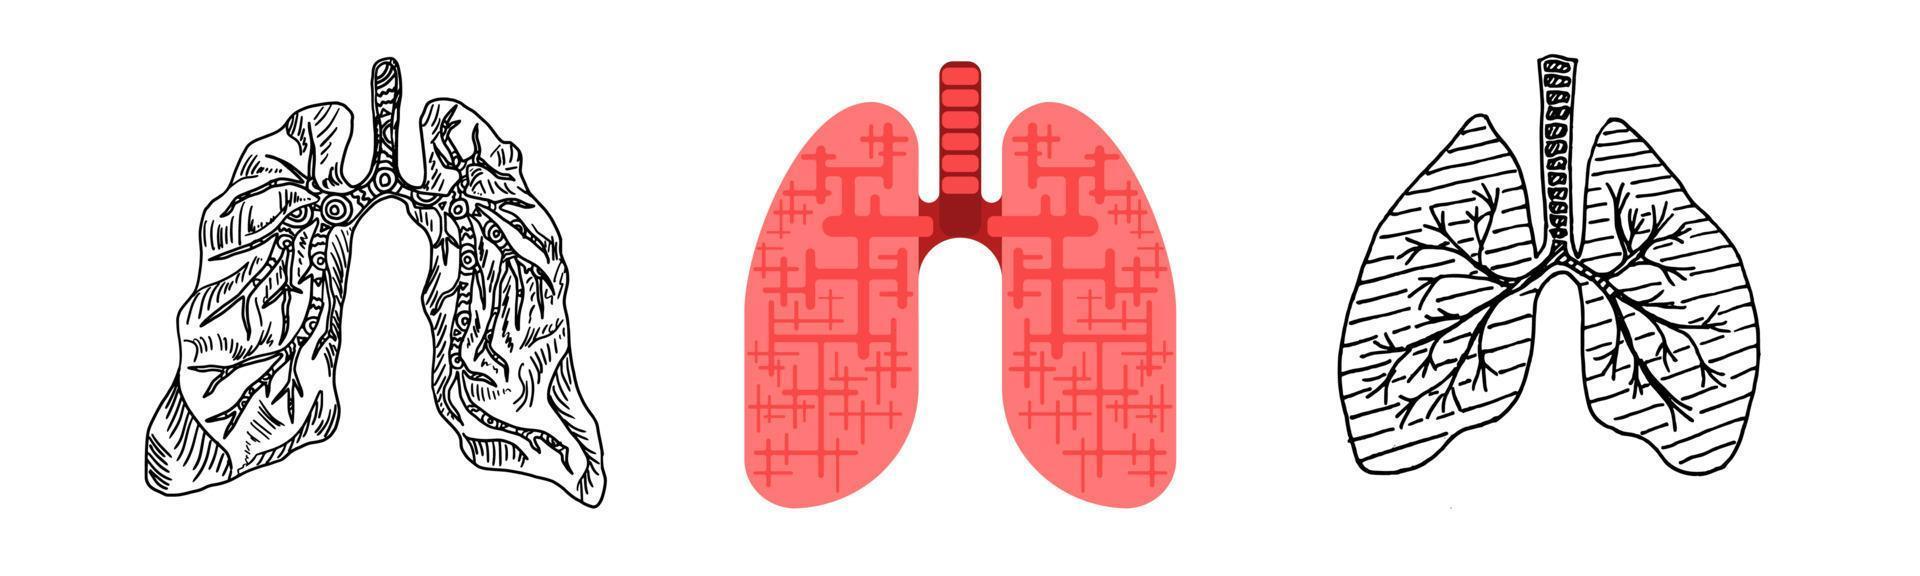 disegno di uno stile piatto di schizzo di scarabocchio del polmone umano vettore